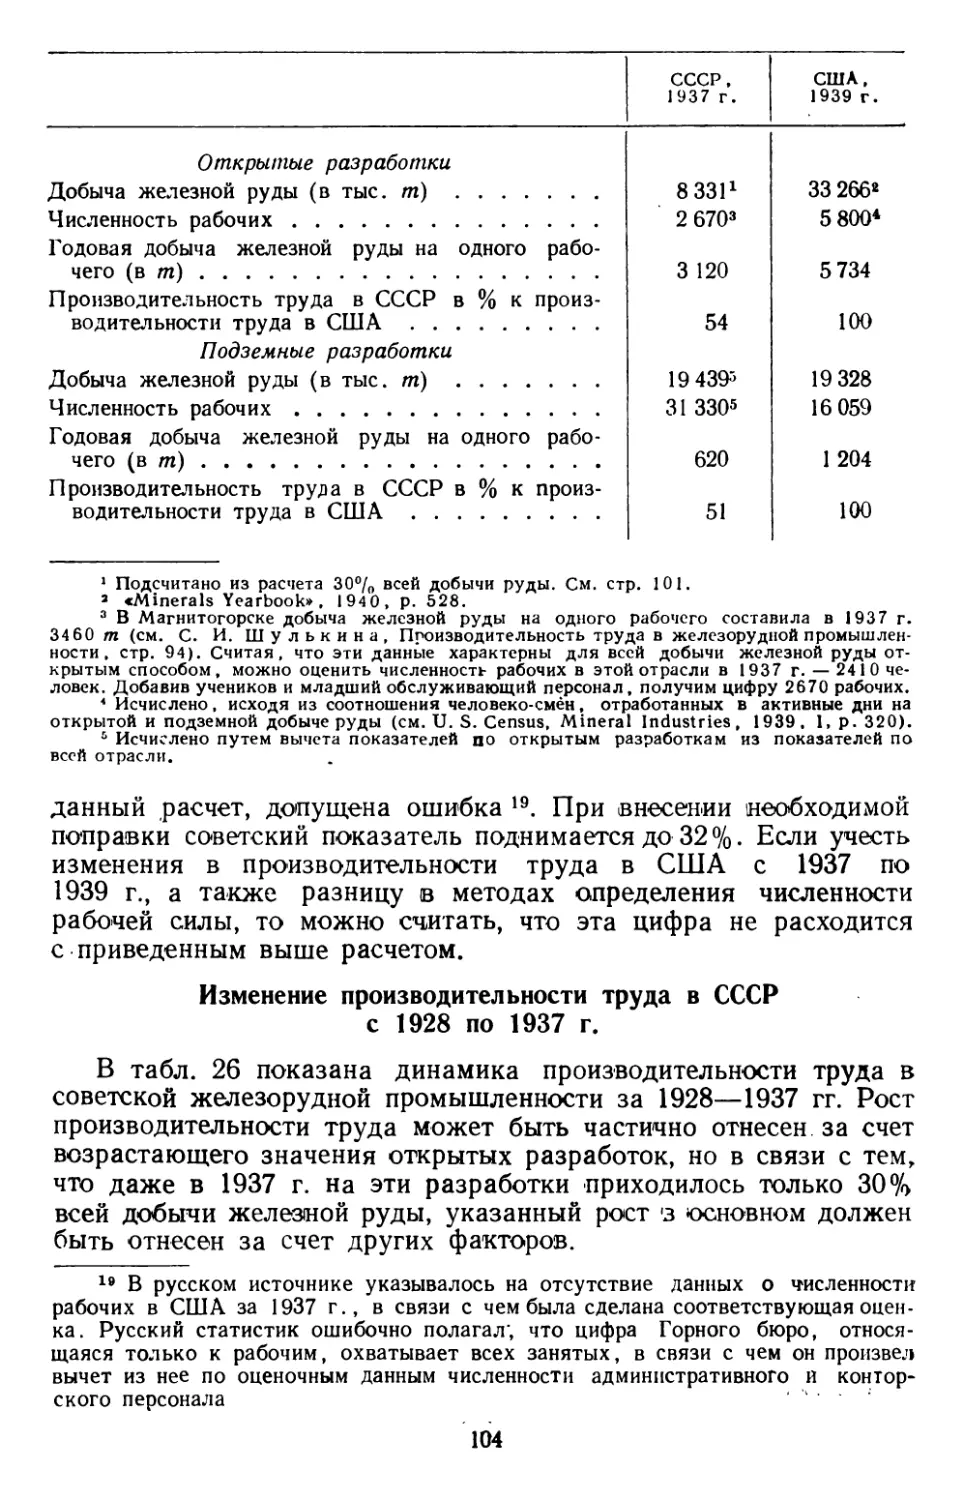 Изменение производительности труда в СССР с 1928 по 1937 г